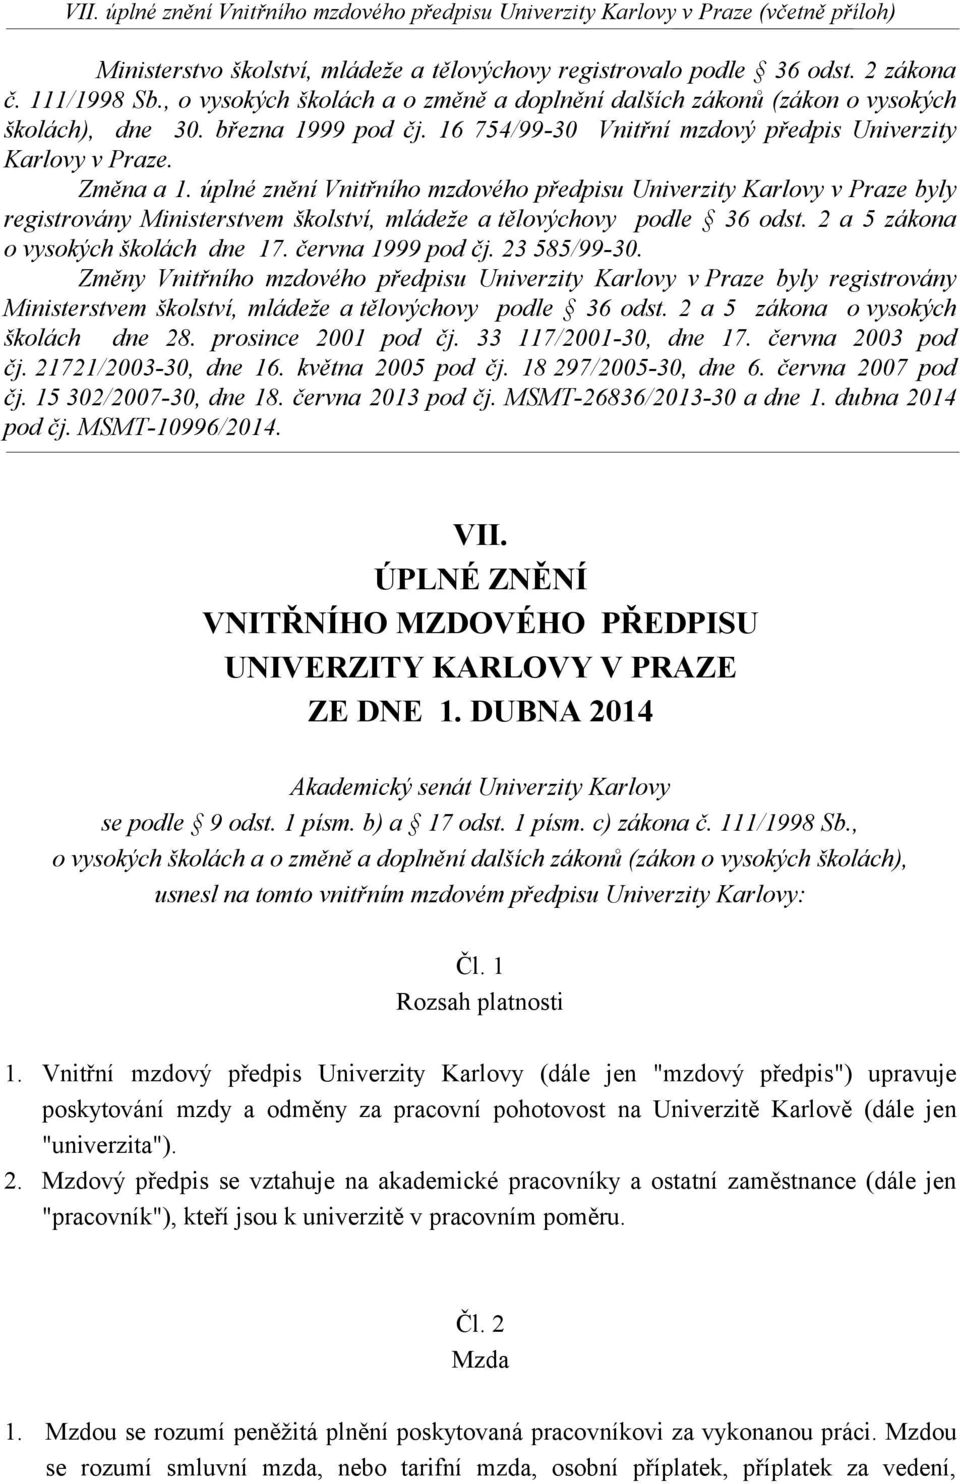 úplné znění Vnitřního mzdového předpisu Univerzity Karlovy v Praze byly registrovány Ministerstvem školství, mládeže a tělovýchovy podle 36 odst. 2 a 5 zákona o vysokých školách dne 17.